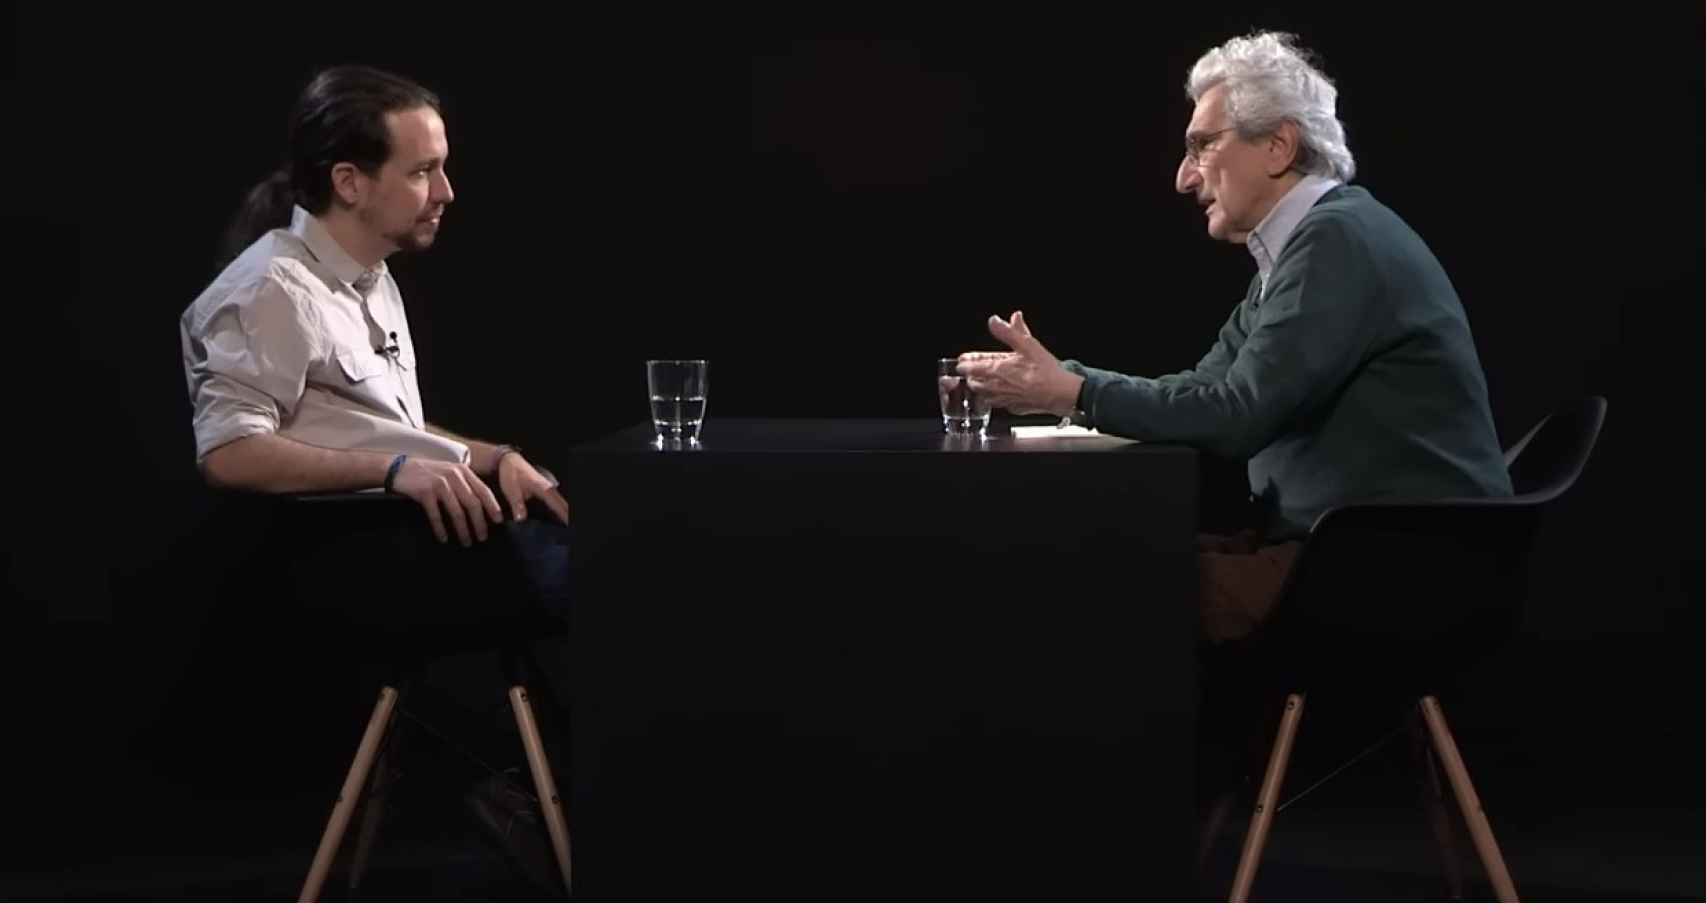 El filósofo Toni Negri en una entrevista con Pablo Iglesias en 2015.